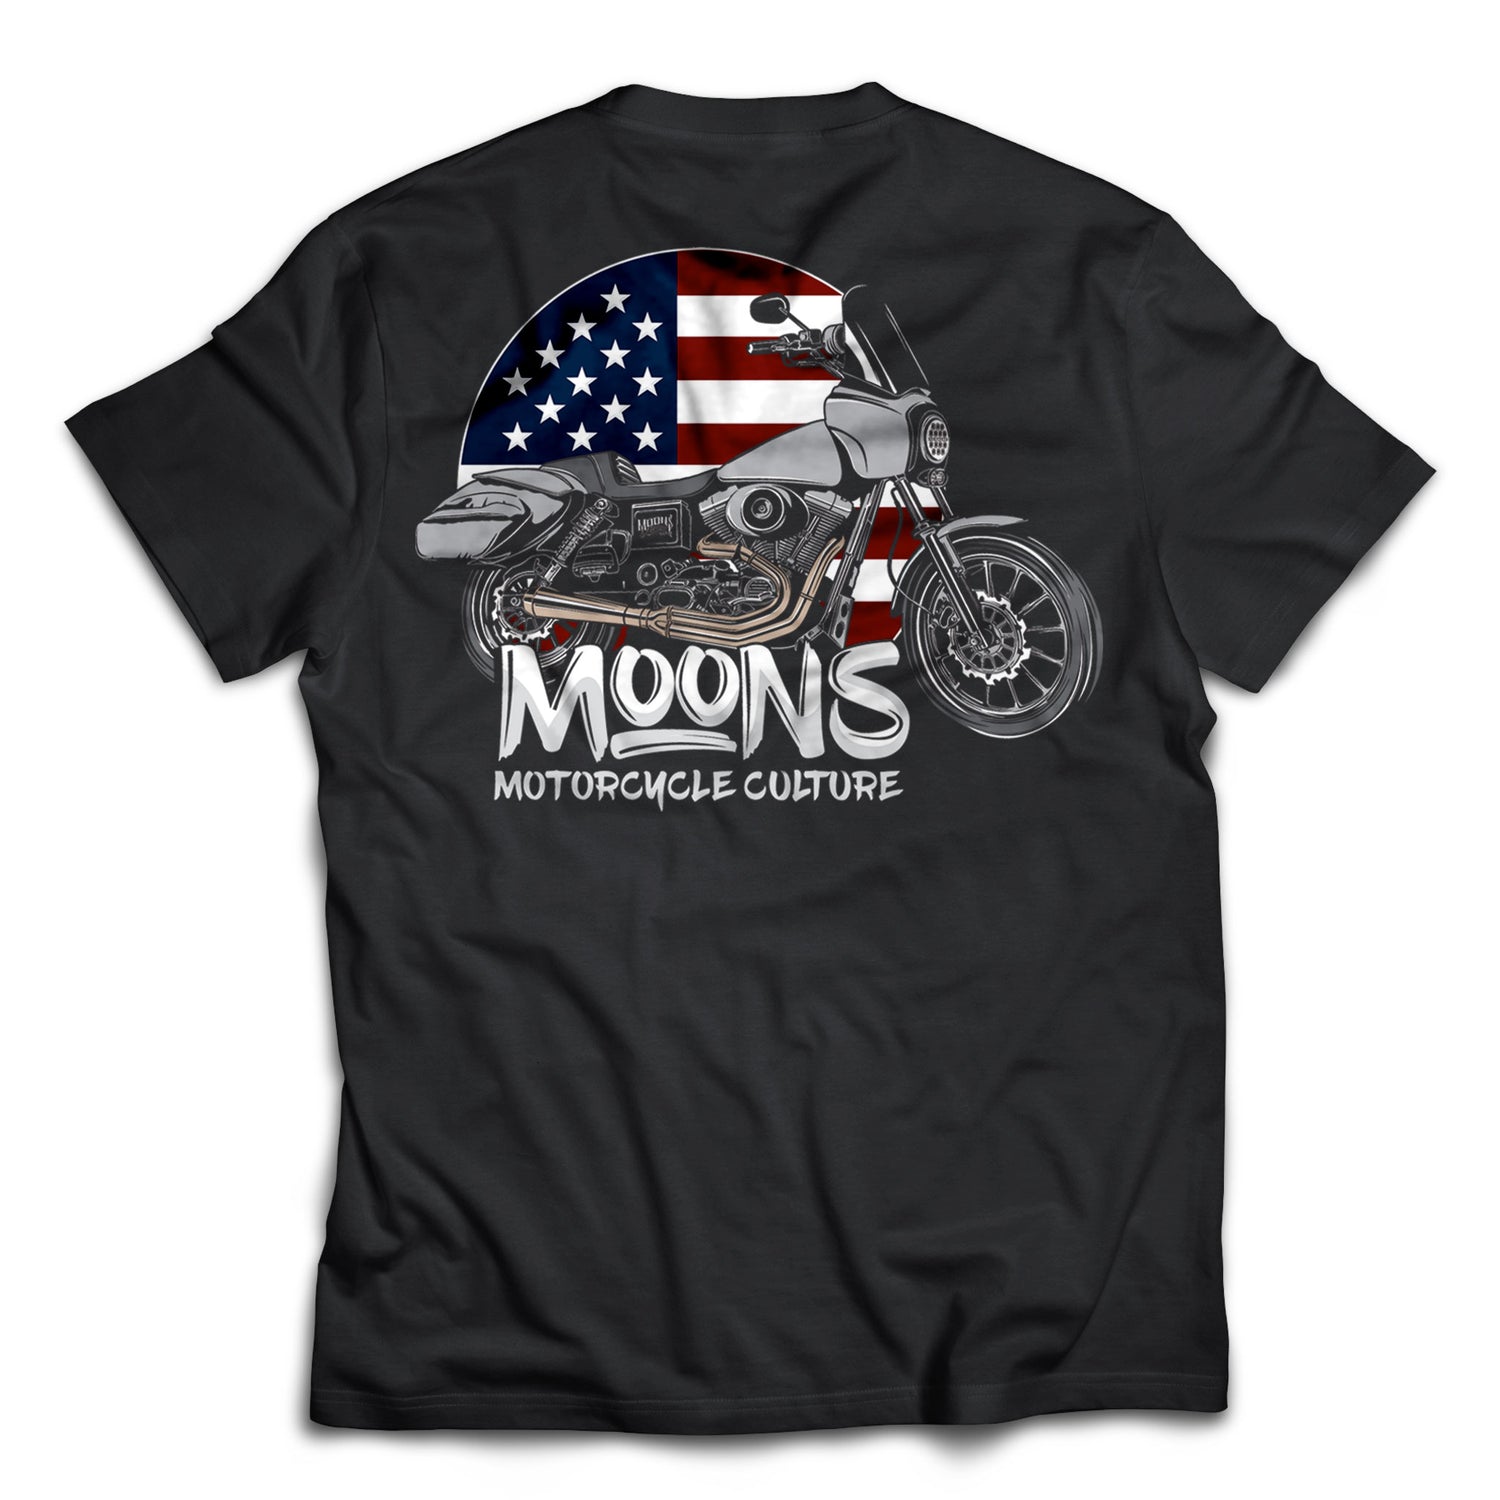 MOONSMC® FXDT / T-SPORT MURICA T-Shirt, Apparel, MOONS, MOONSMC® // Moons Motorcycle Culture